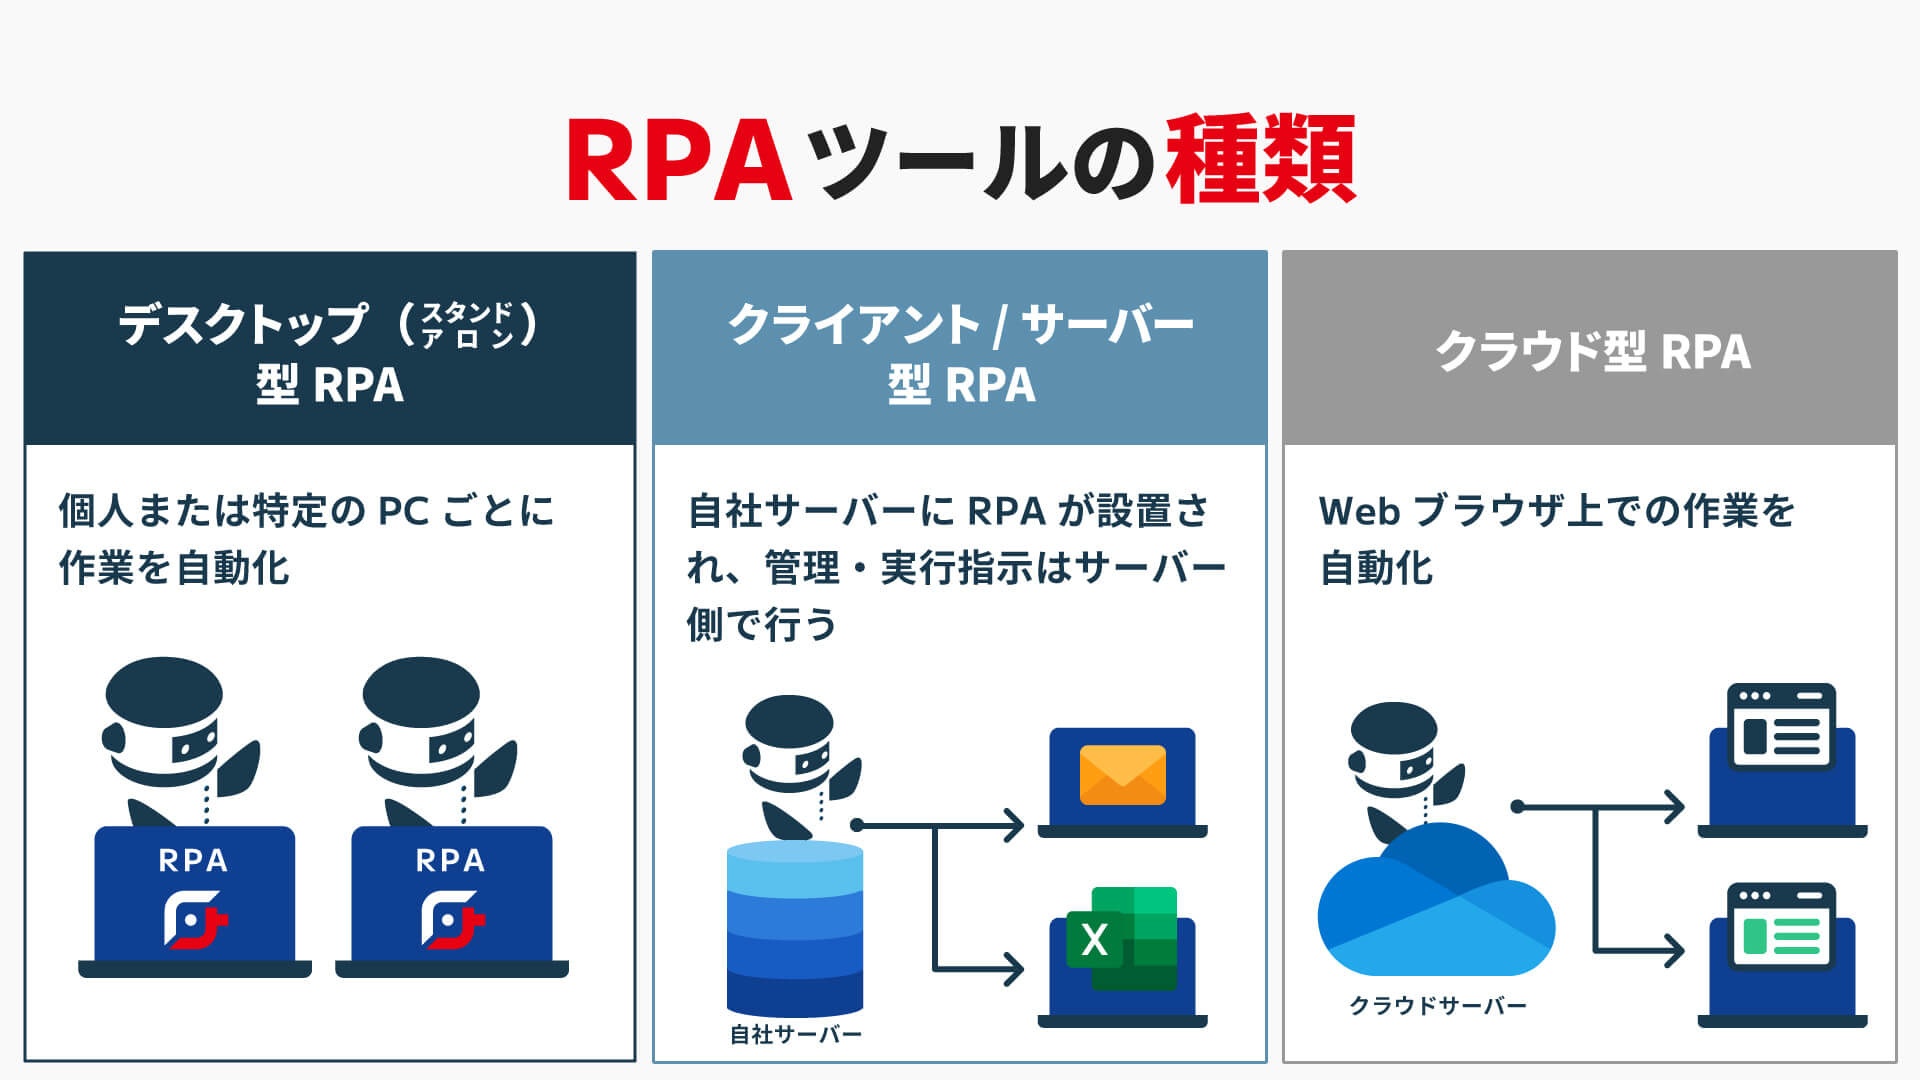 RPAには主に「デスクトップ（スタンドアロン）型RPA」、「クライアント/サーバー型RPA」、「クラウド型RPA」の3種類に分かれます。